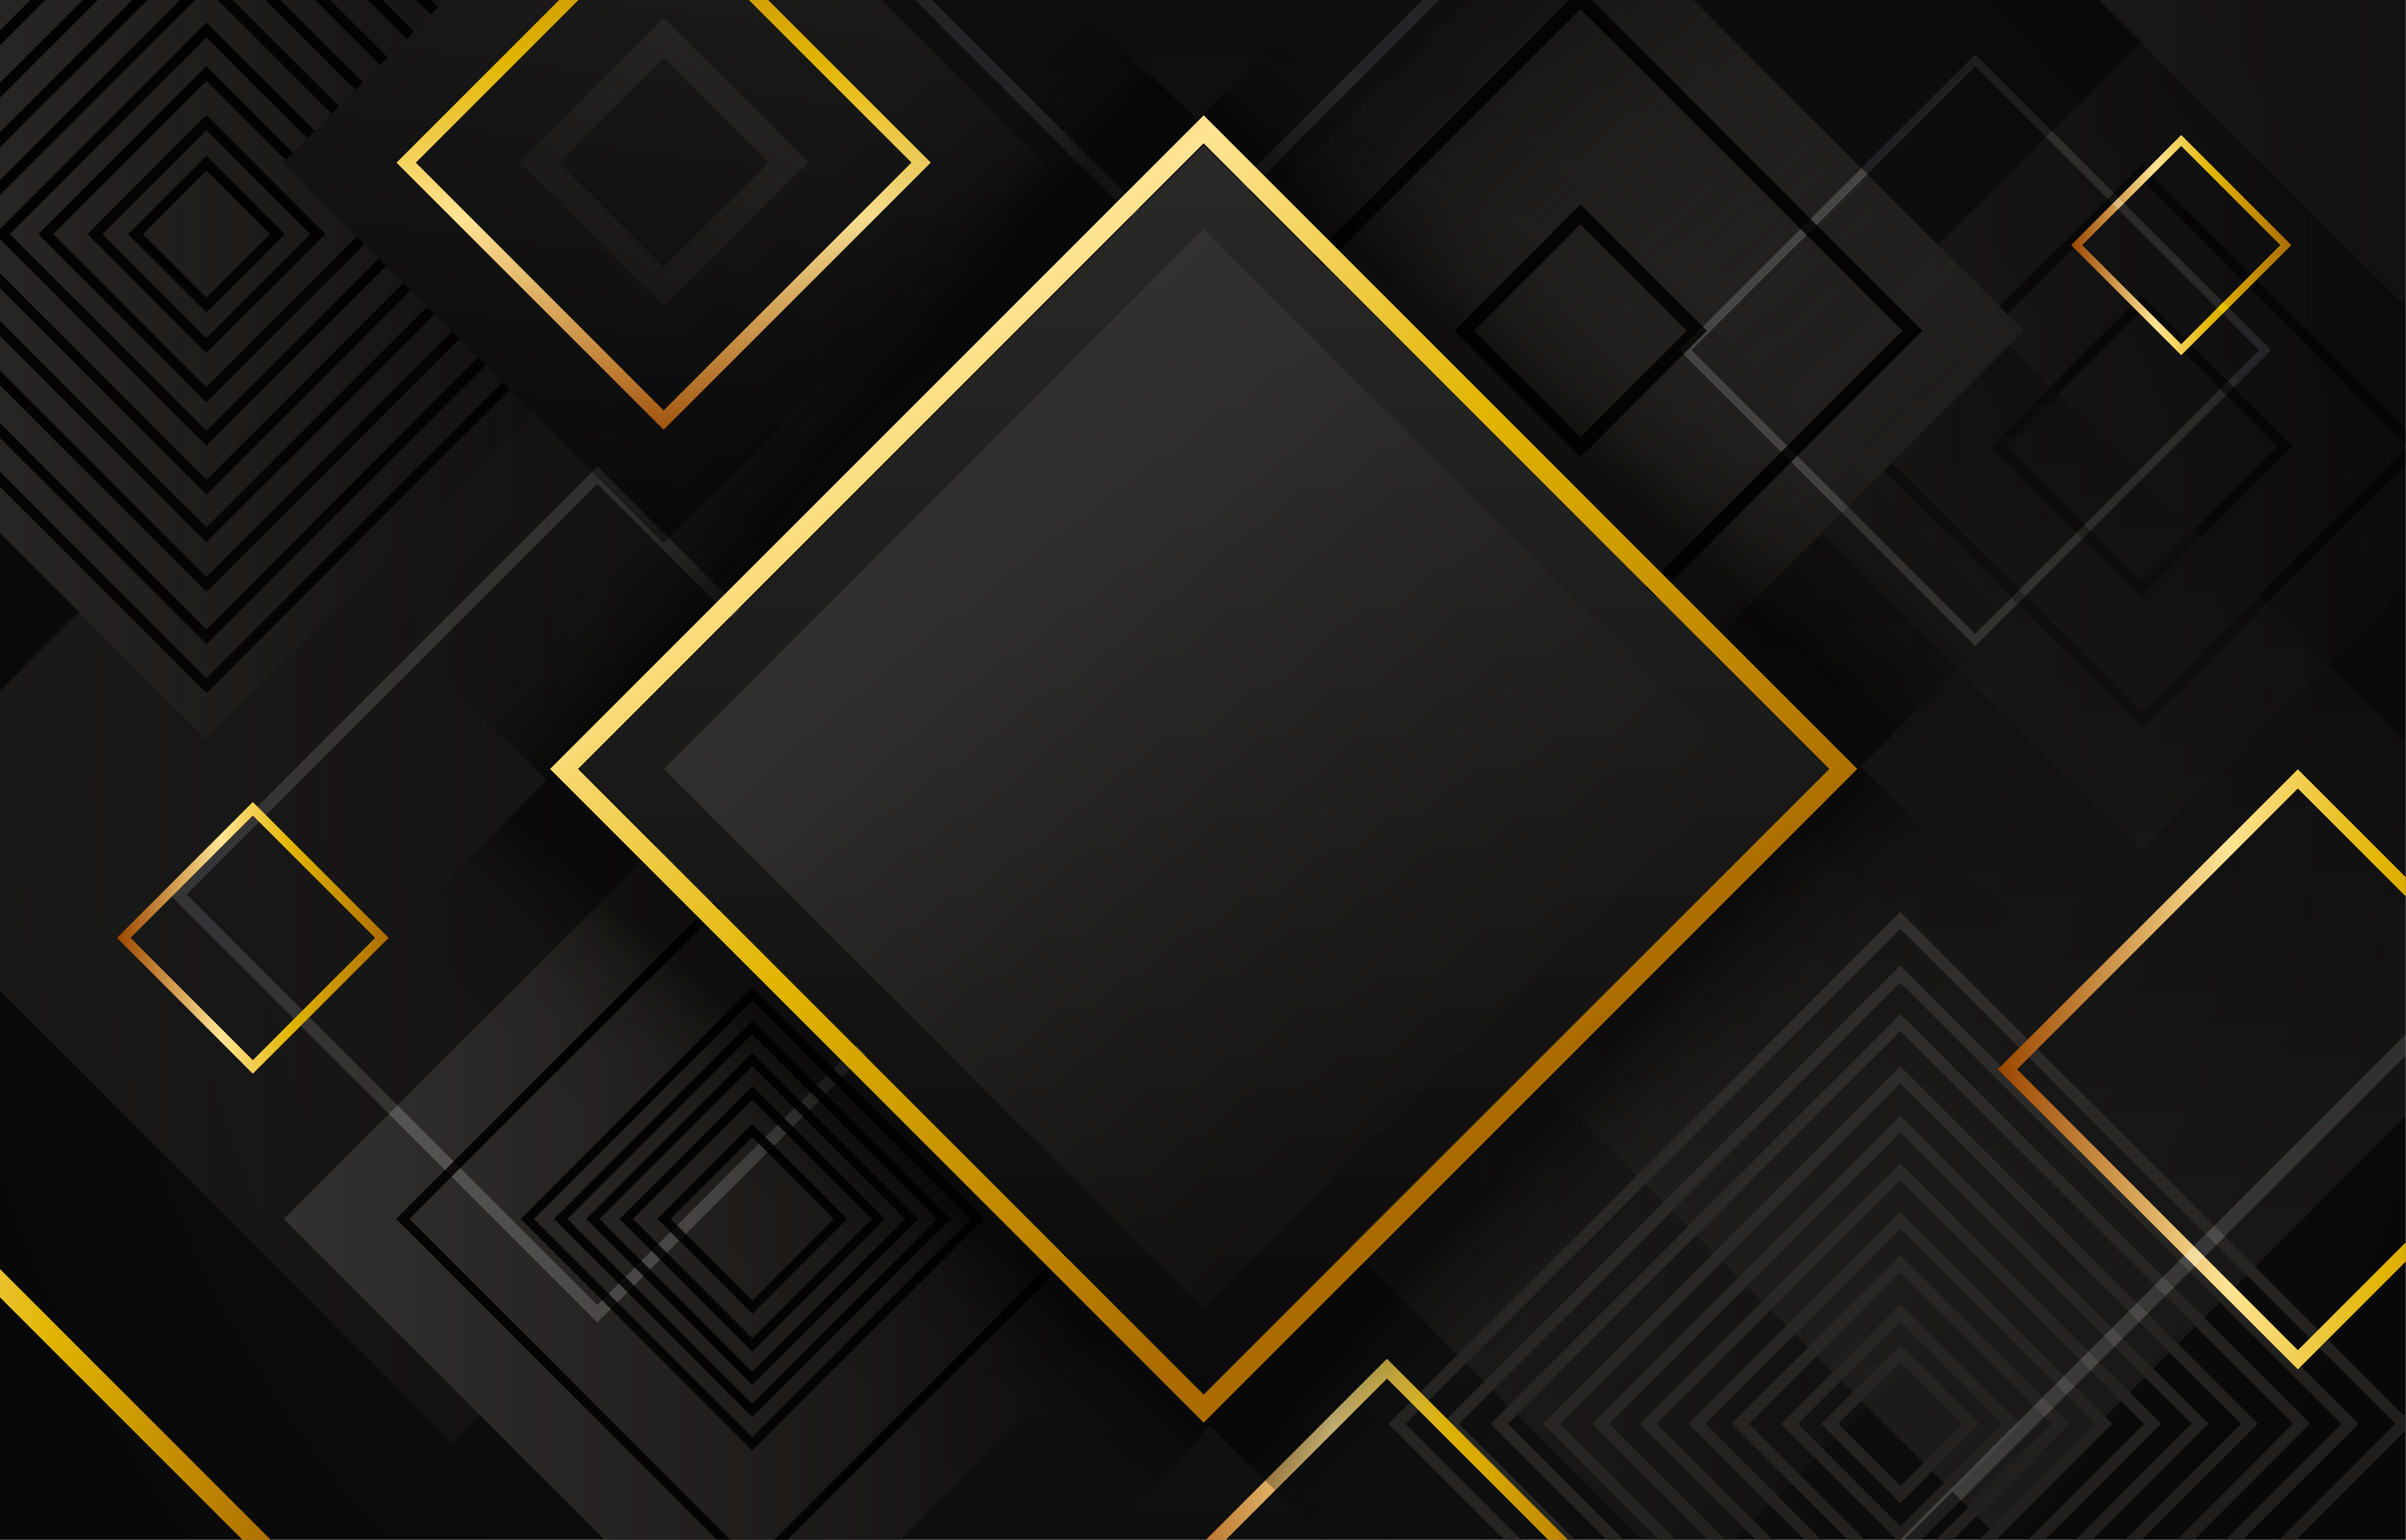 Hình nền hình học đen và vàng (Geometric black and gold background): \